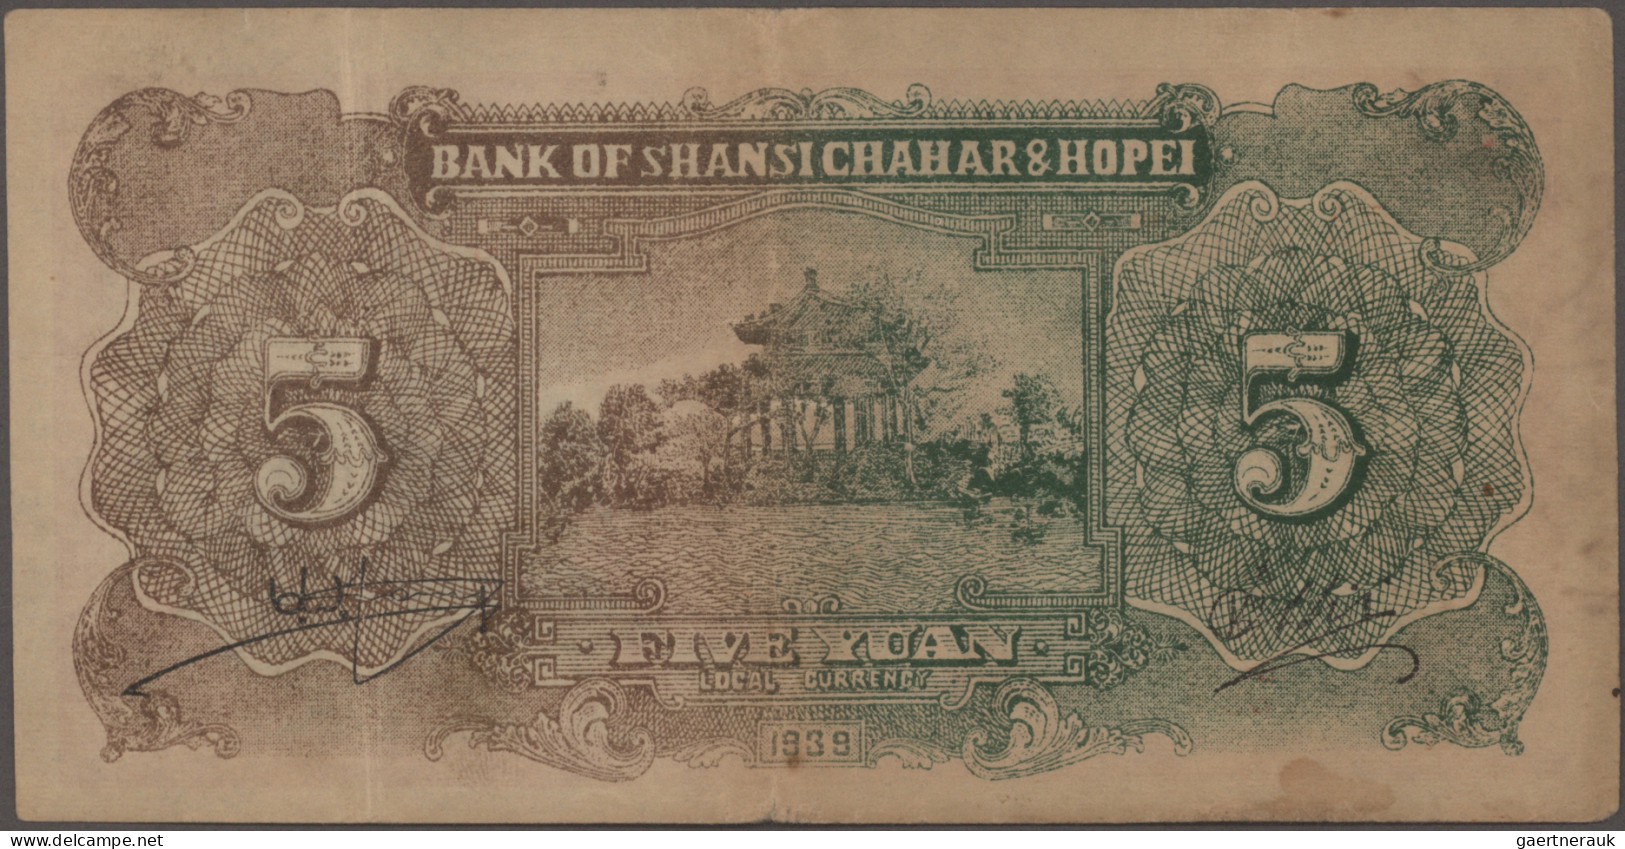 China: BANK OF SHANSI, CHAHAR & HOPEI, Lot With 9 Banknotes, Series 1938-1946, C - China